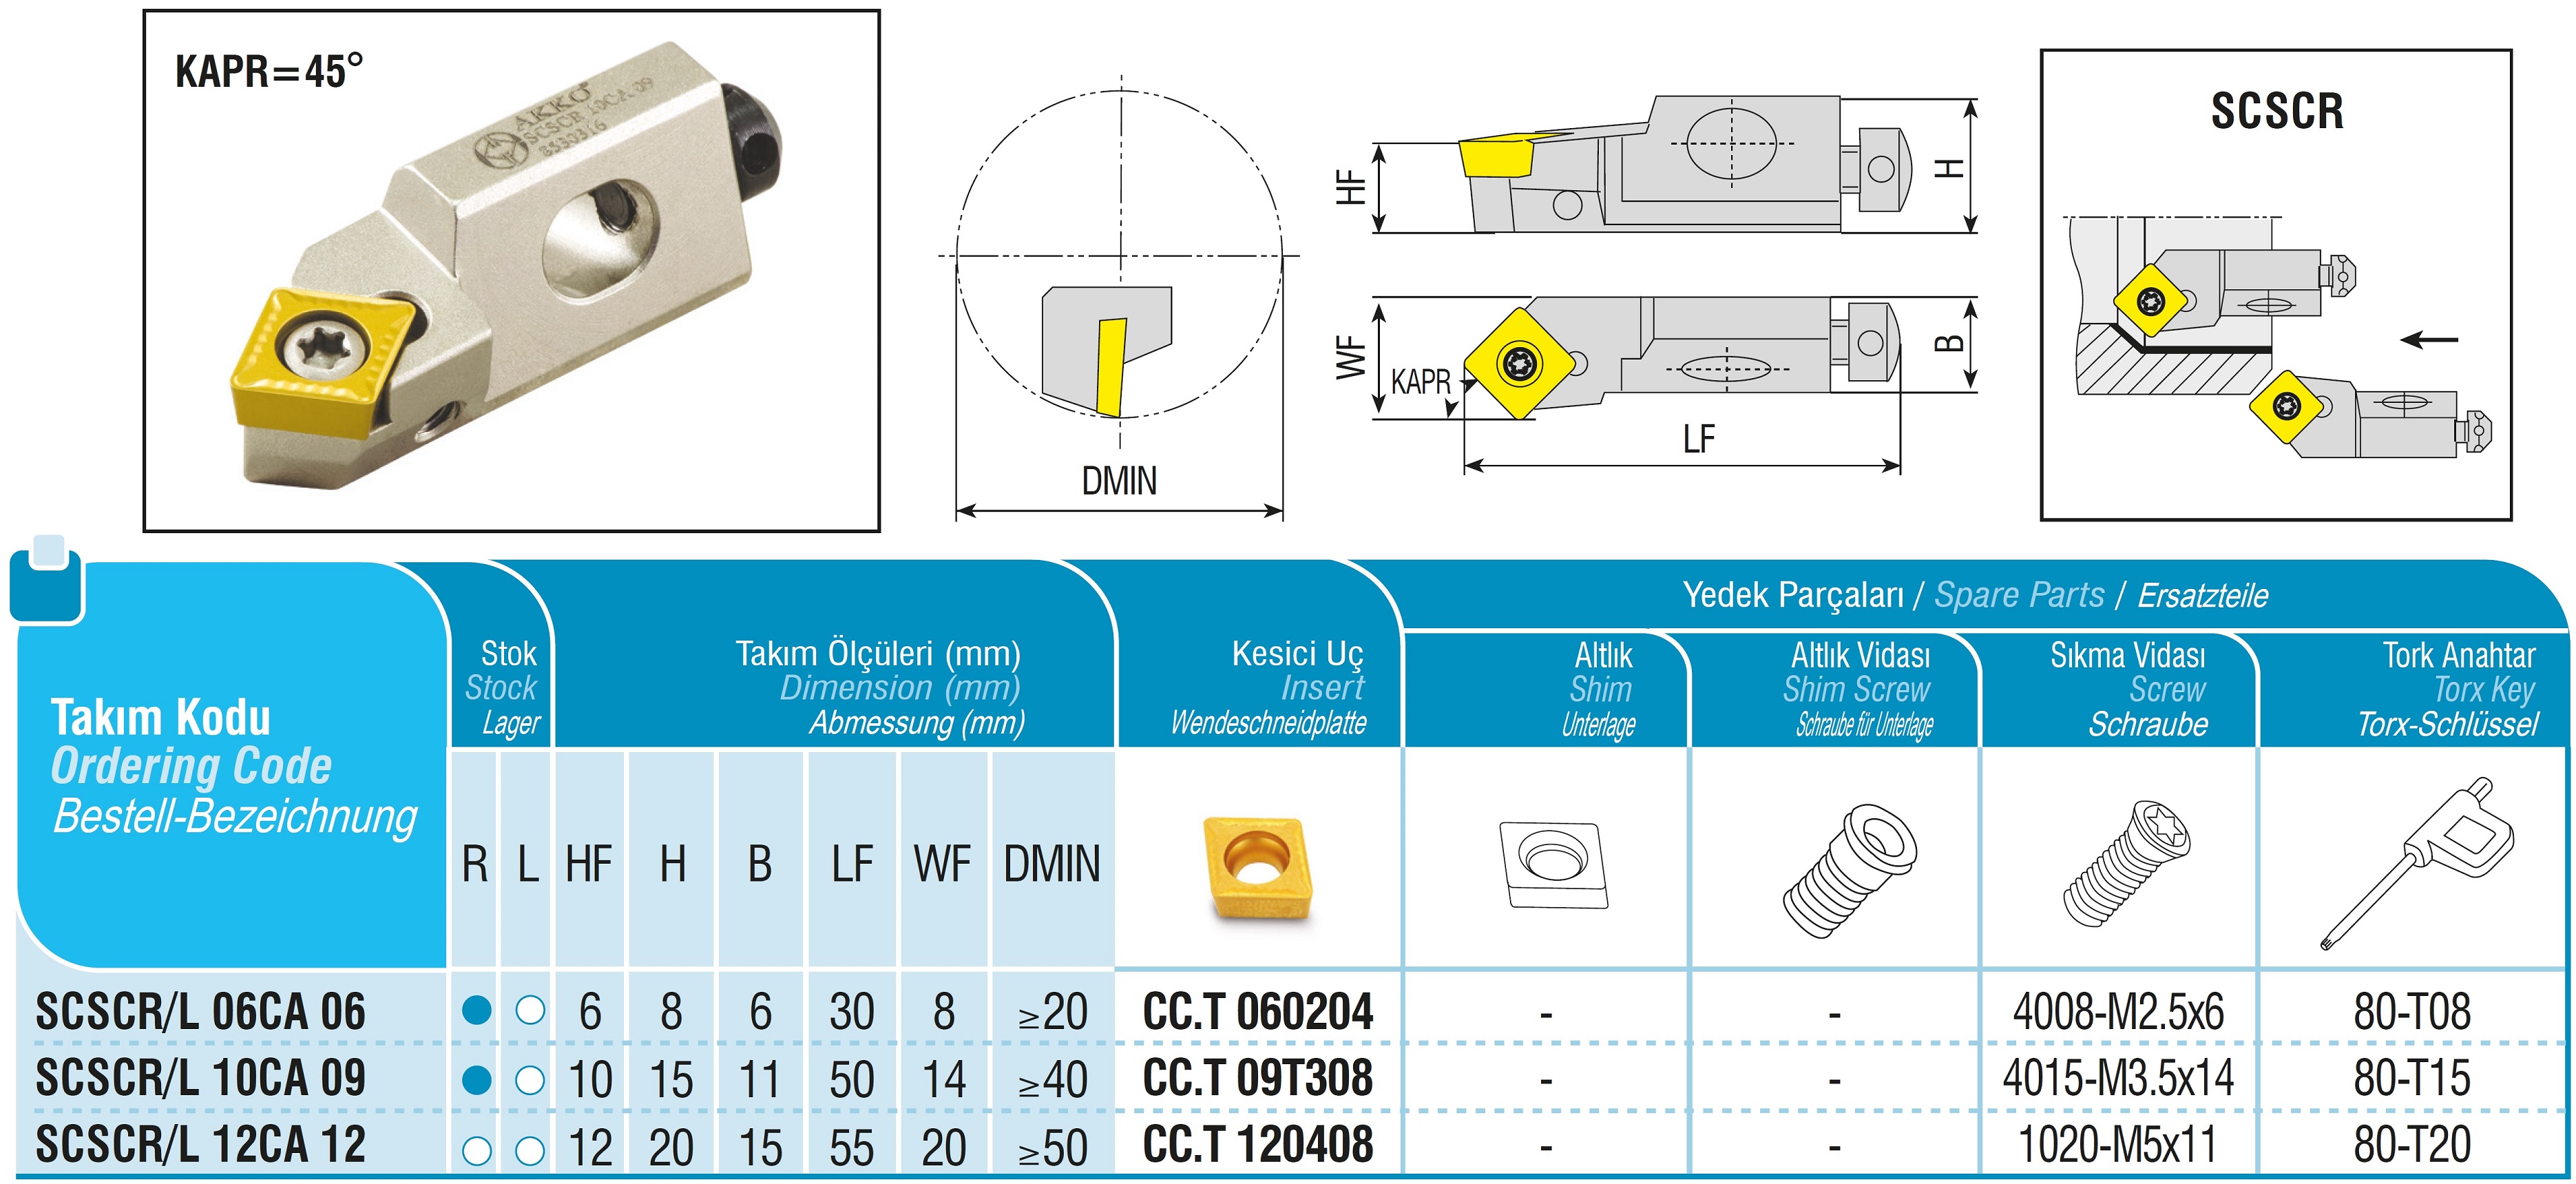 AKKO-Kurzdrehhalter für ISO-WSP CC.T 120408
links, 45° Anstellwinkel